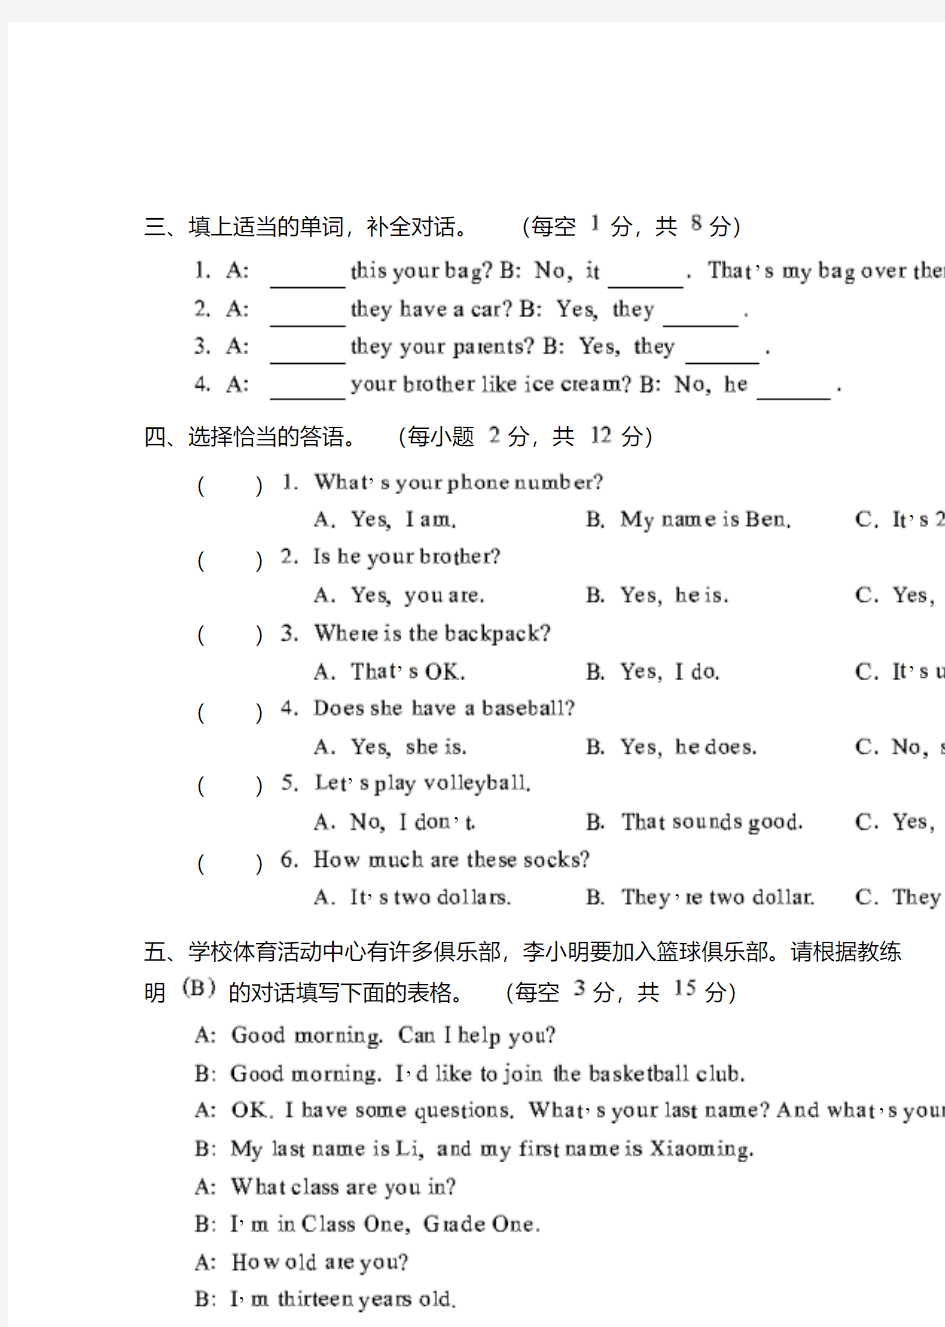 北京市小学六年级英语毕业会考真题试卷